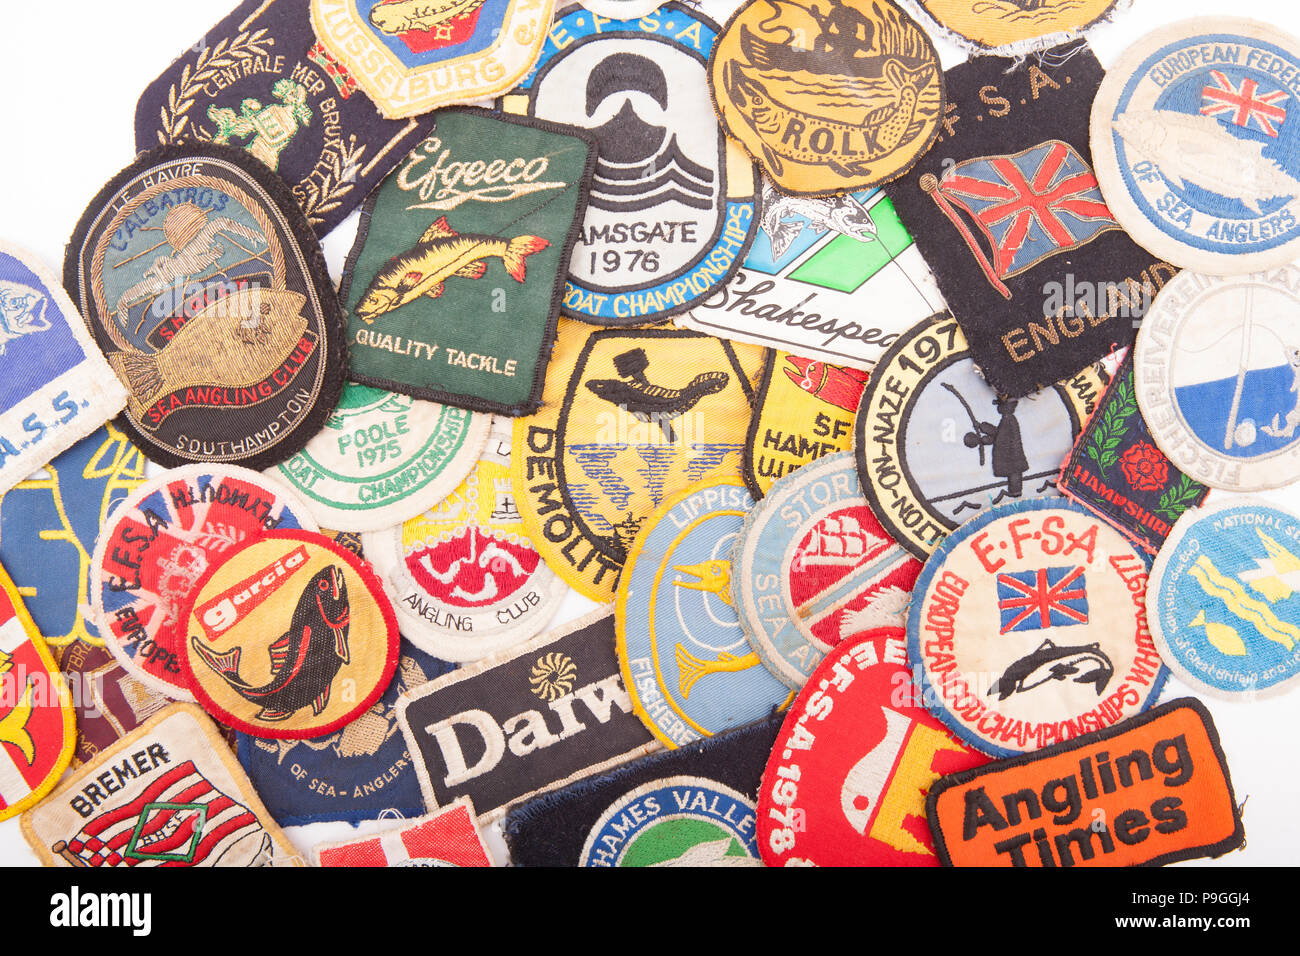 Vintage Badges Banque d'image et photos - Alamy